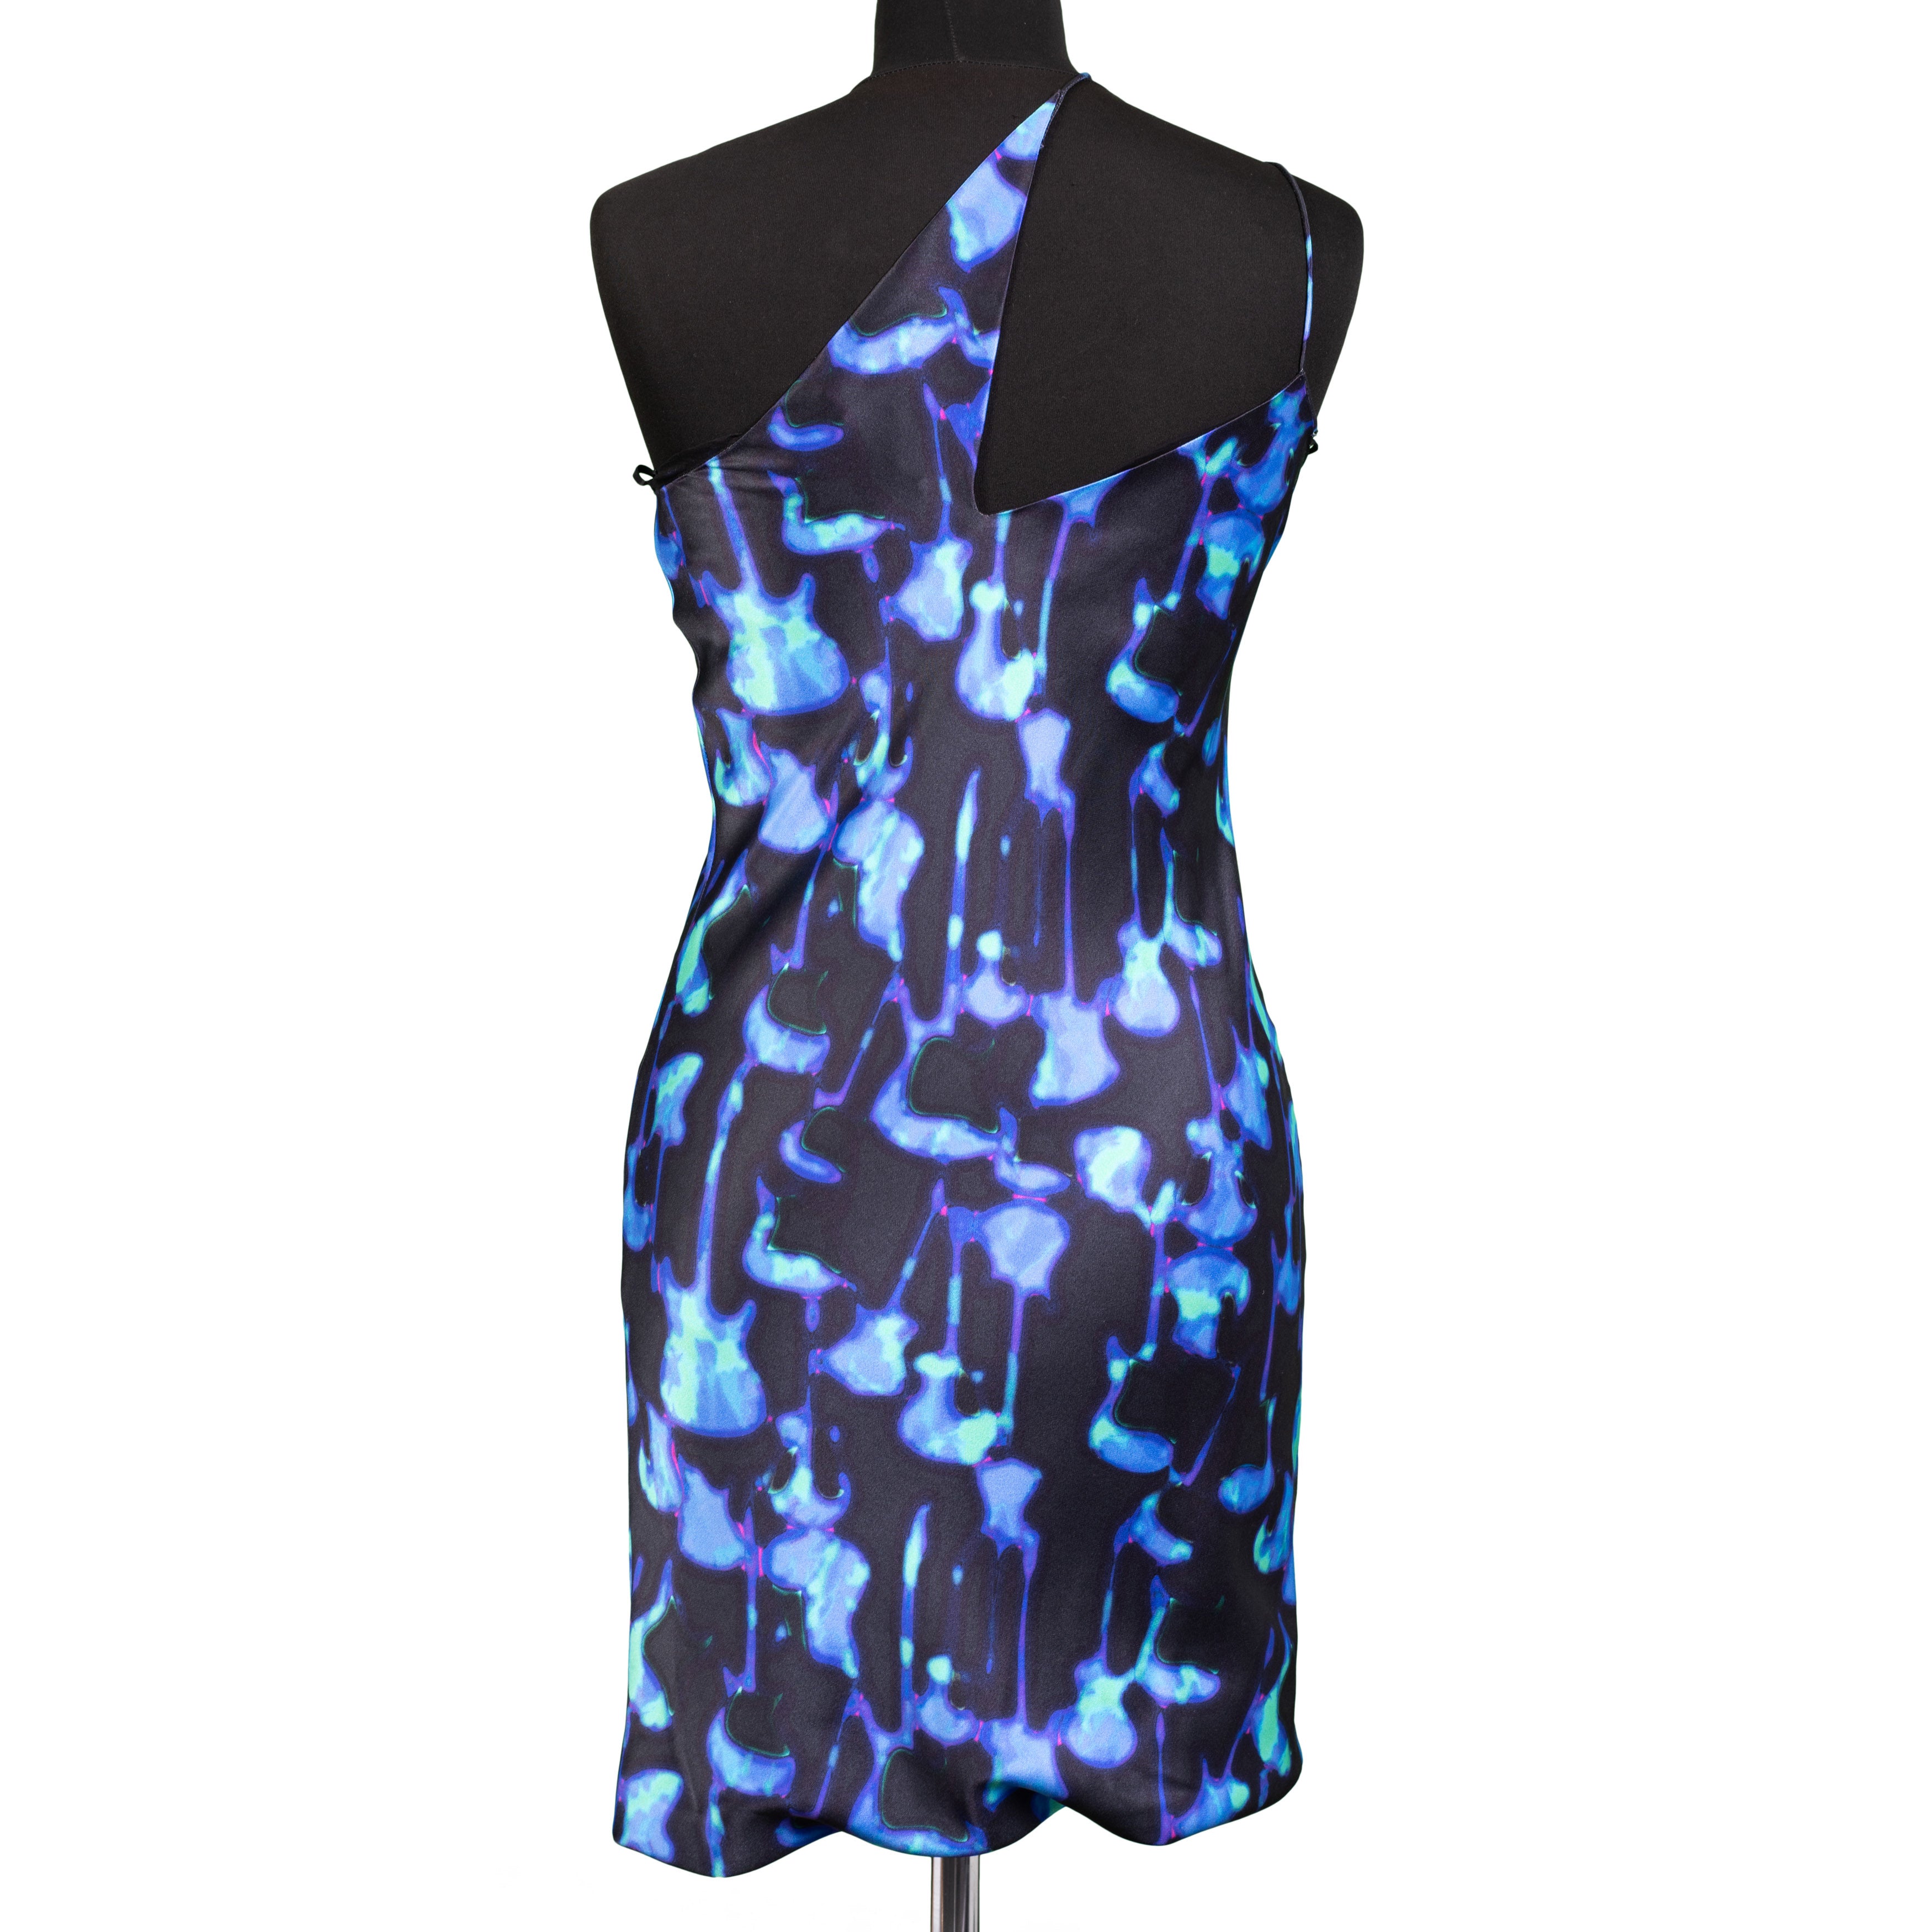 NINA RICCI PARIS Multi-Color Silk One Shoulder Dress Size FR 36 NEW US 4 WOMEN'S BOUTIQUE